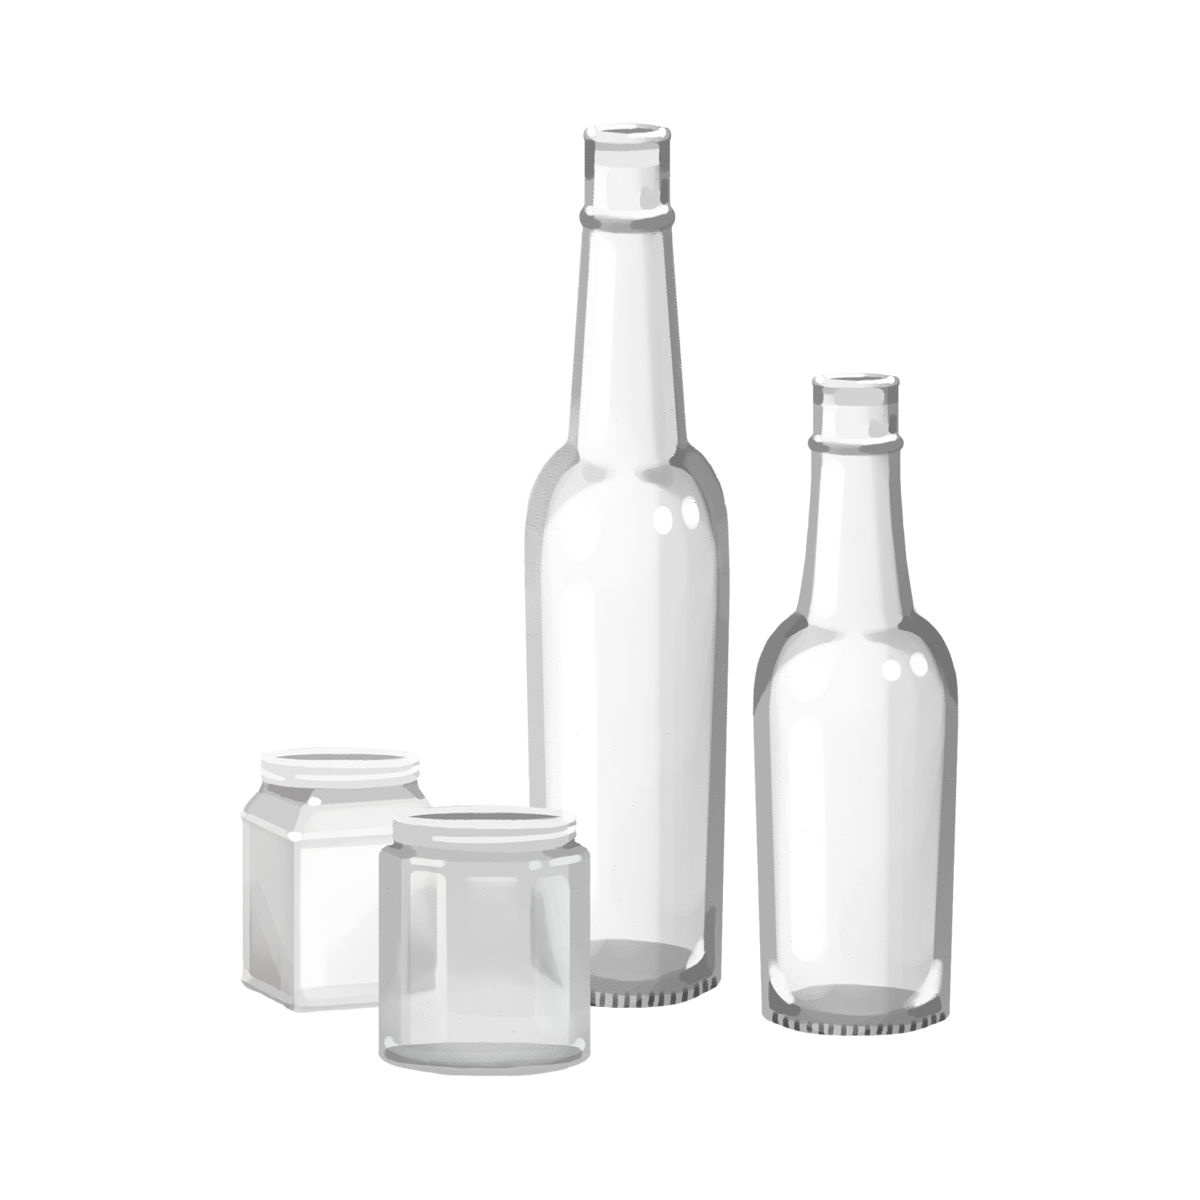 35 空き瓶 イラスト 無料イラスト素材 かわいいフリー素材 素材のプ